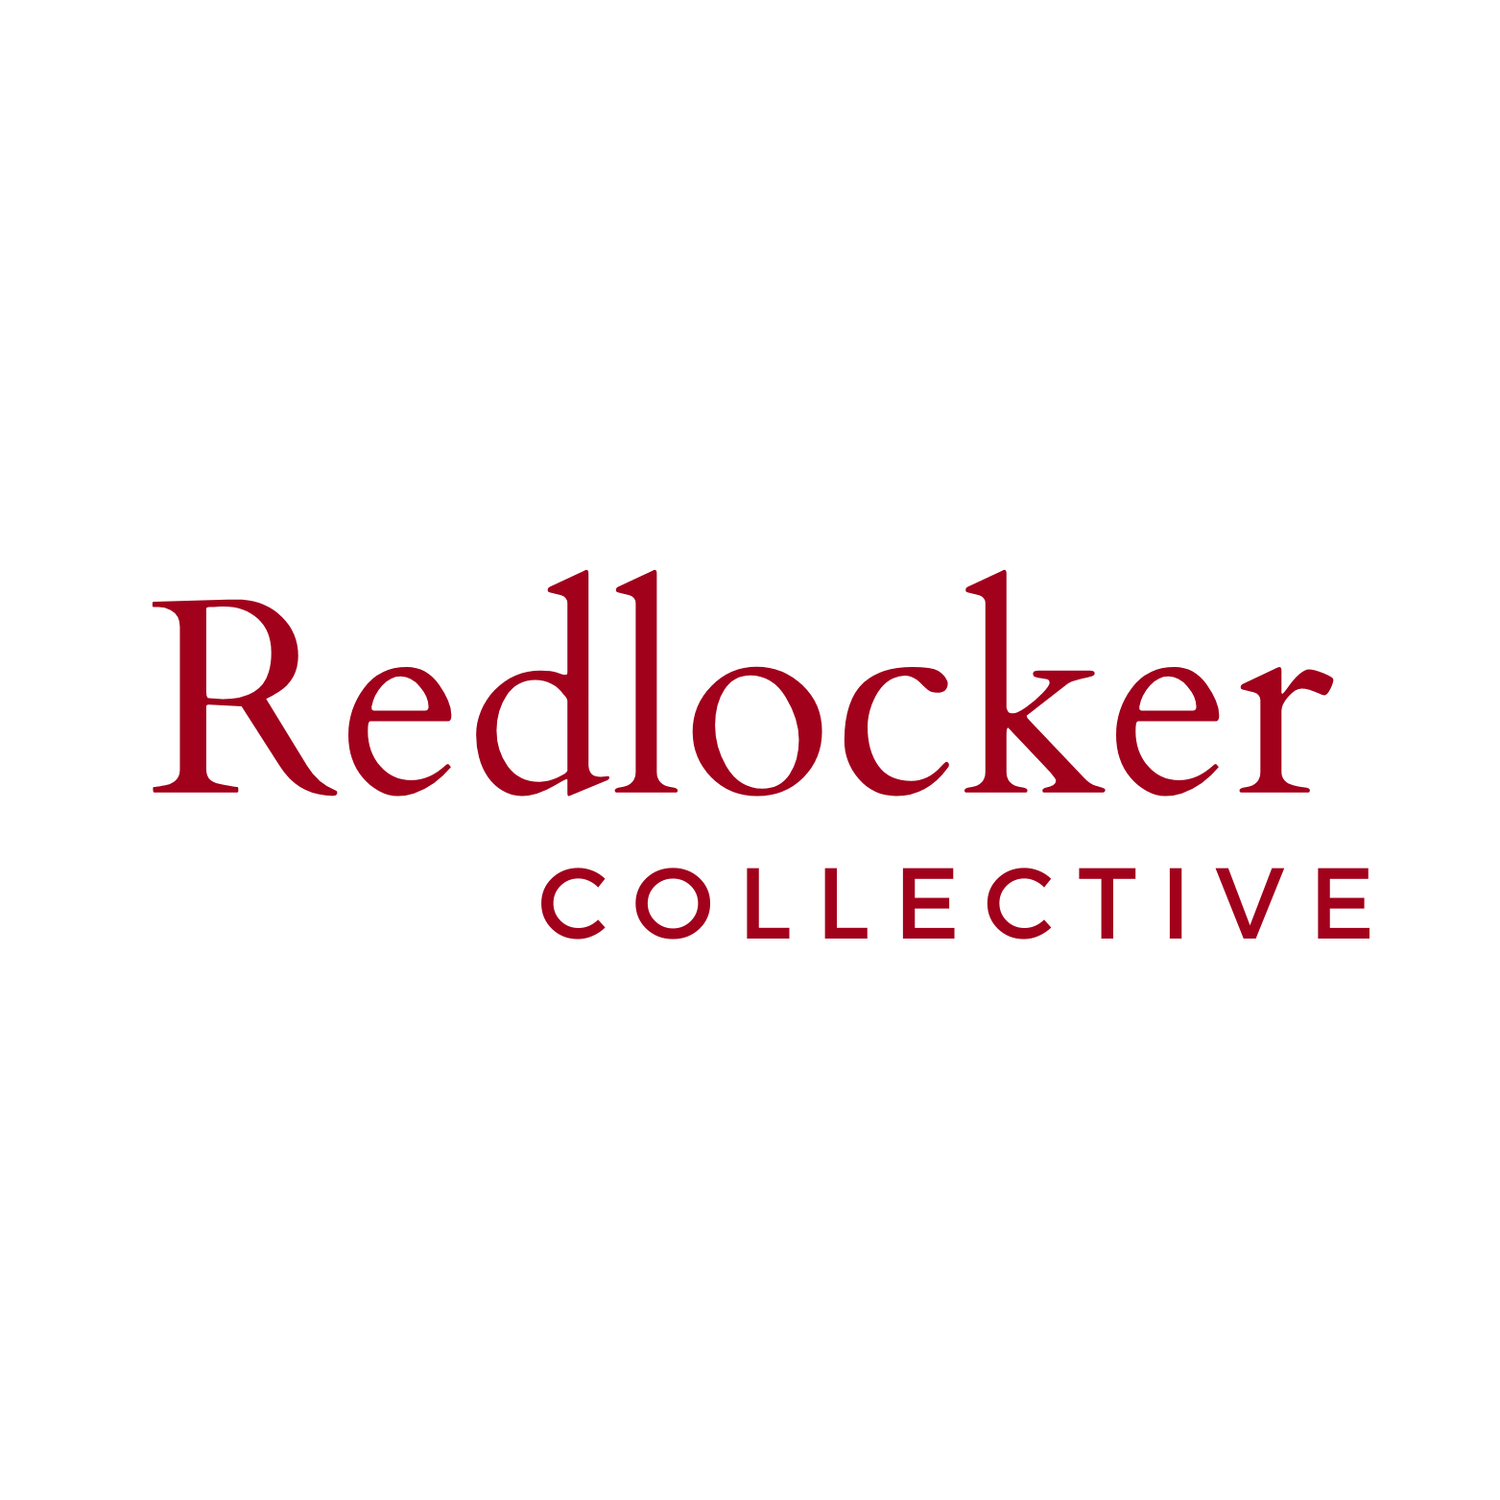 Redlocker Collective